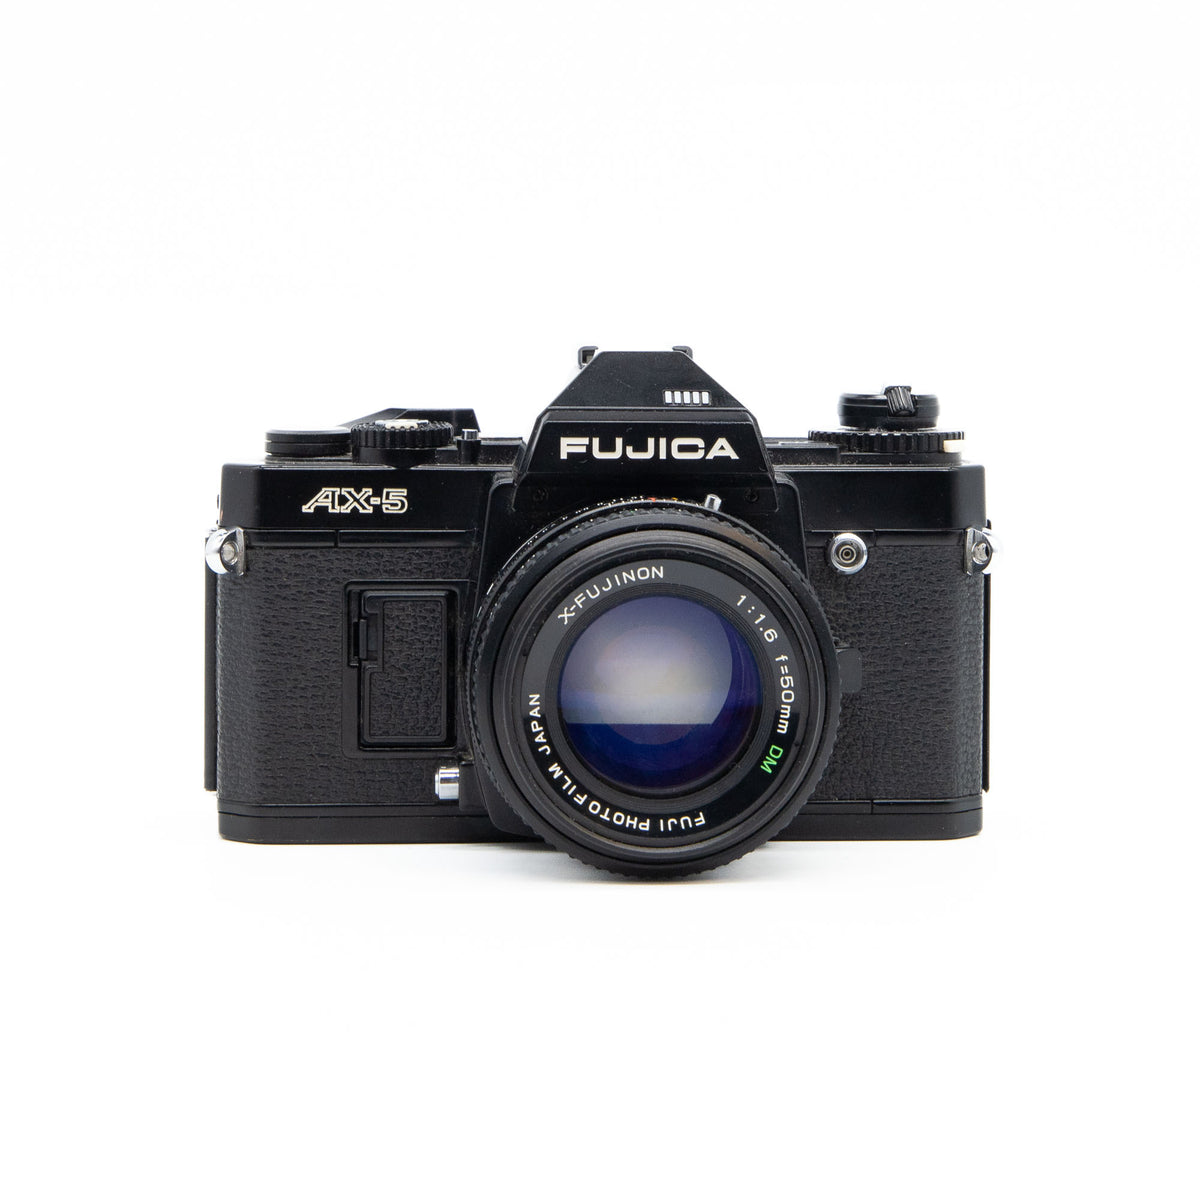 Fujica AX-5 & Fujinon 50mm f/1.6